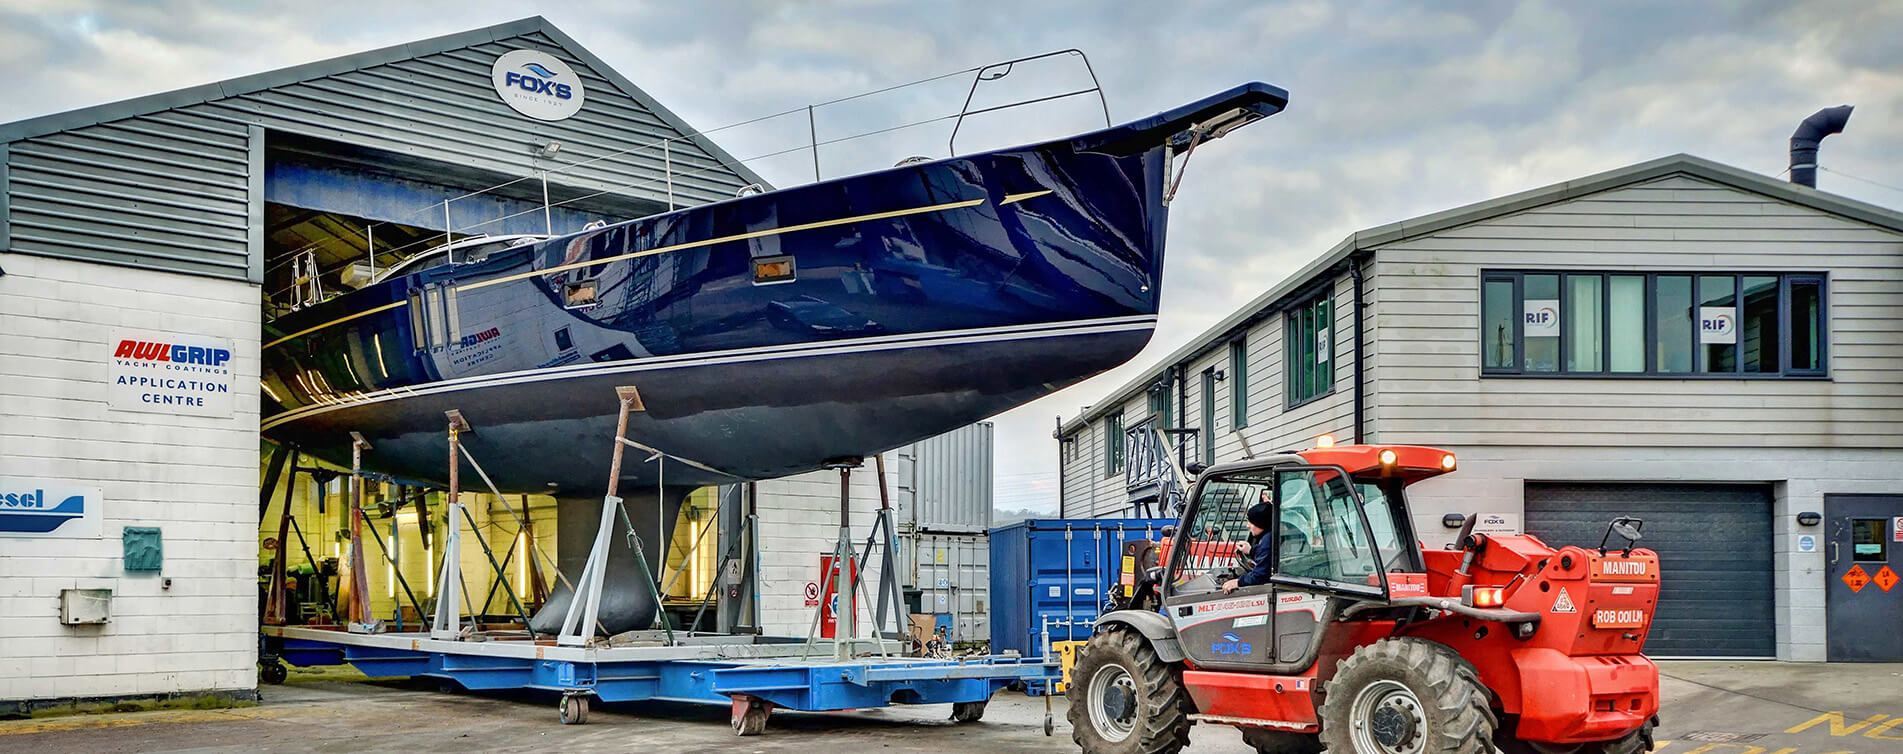 UK's Leading Yacht Refit & Repair